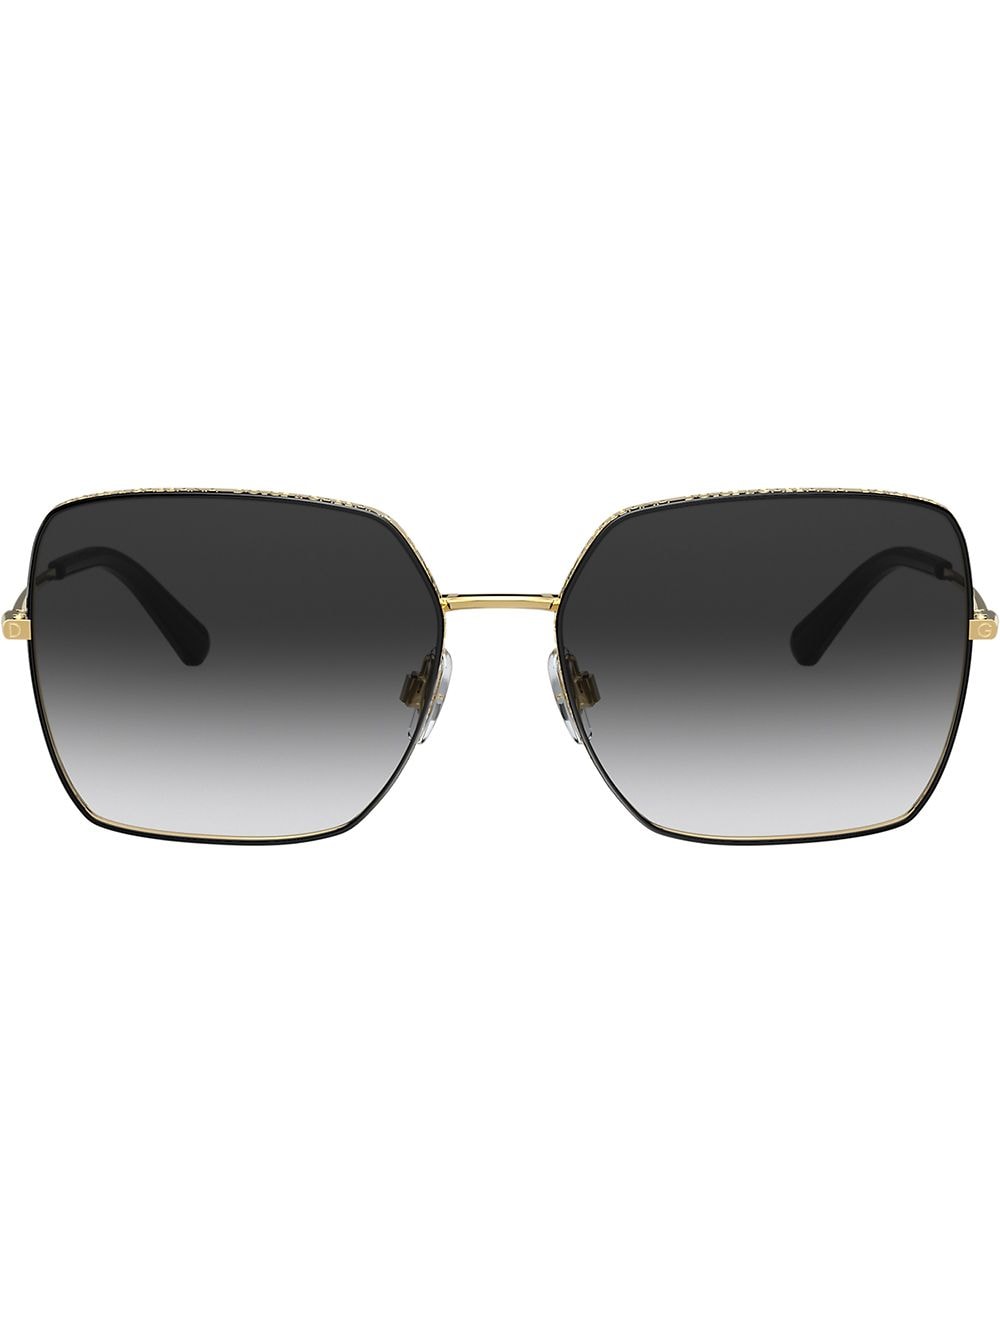 фото Dolce & gabbana eyewear солнцезащитные очки с логотипом